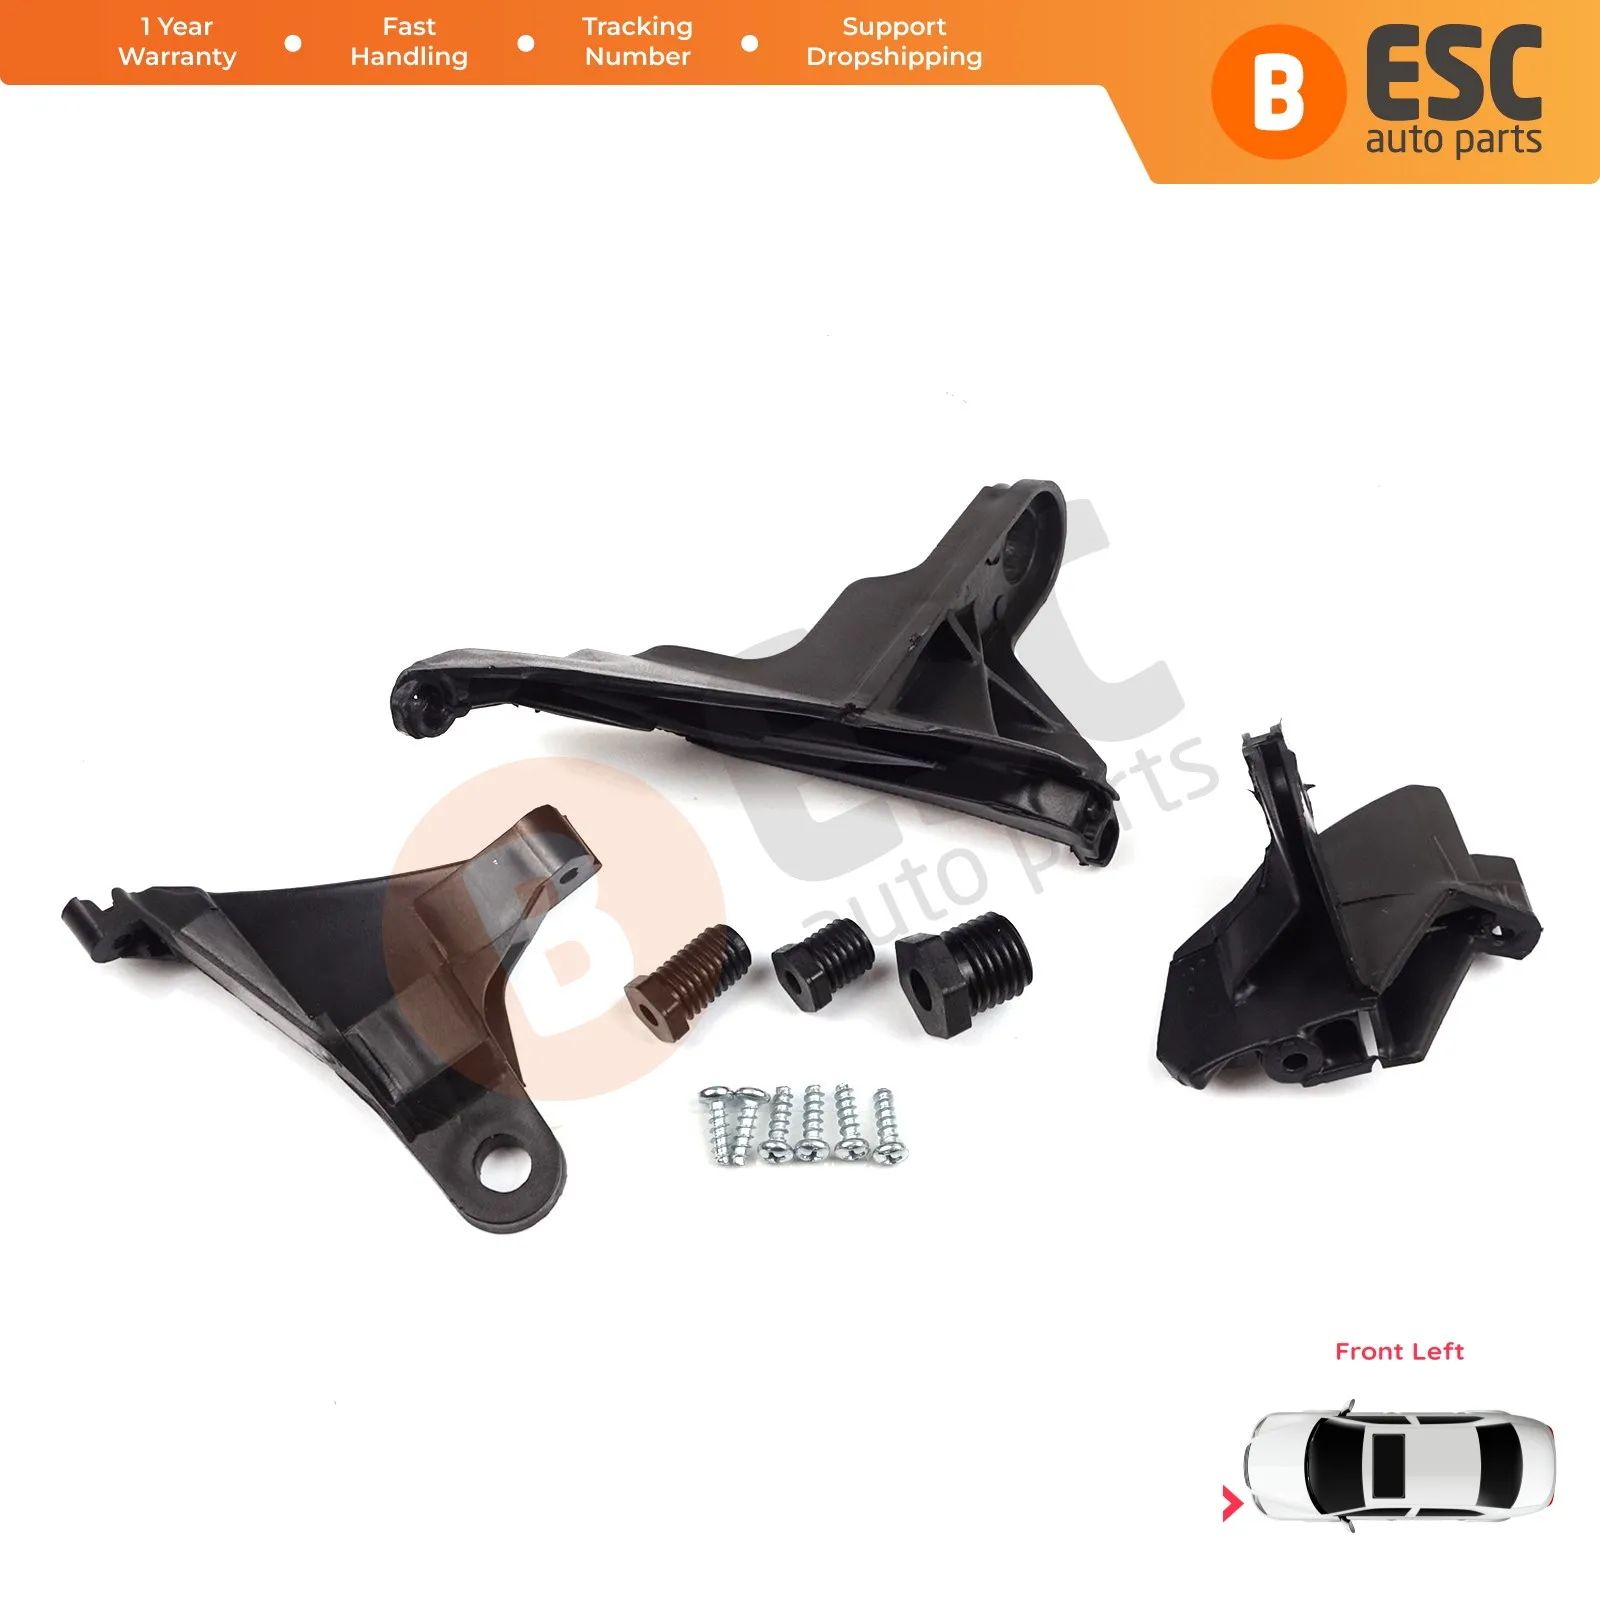 

ESC EHL18 Headlight Headlamp Brackets Holder Tabs Repair Set Left Side A2118201314 for Mercedes E Class W211 S211 2002 2009